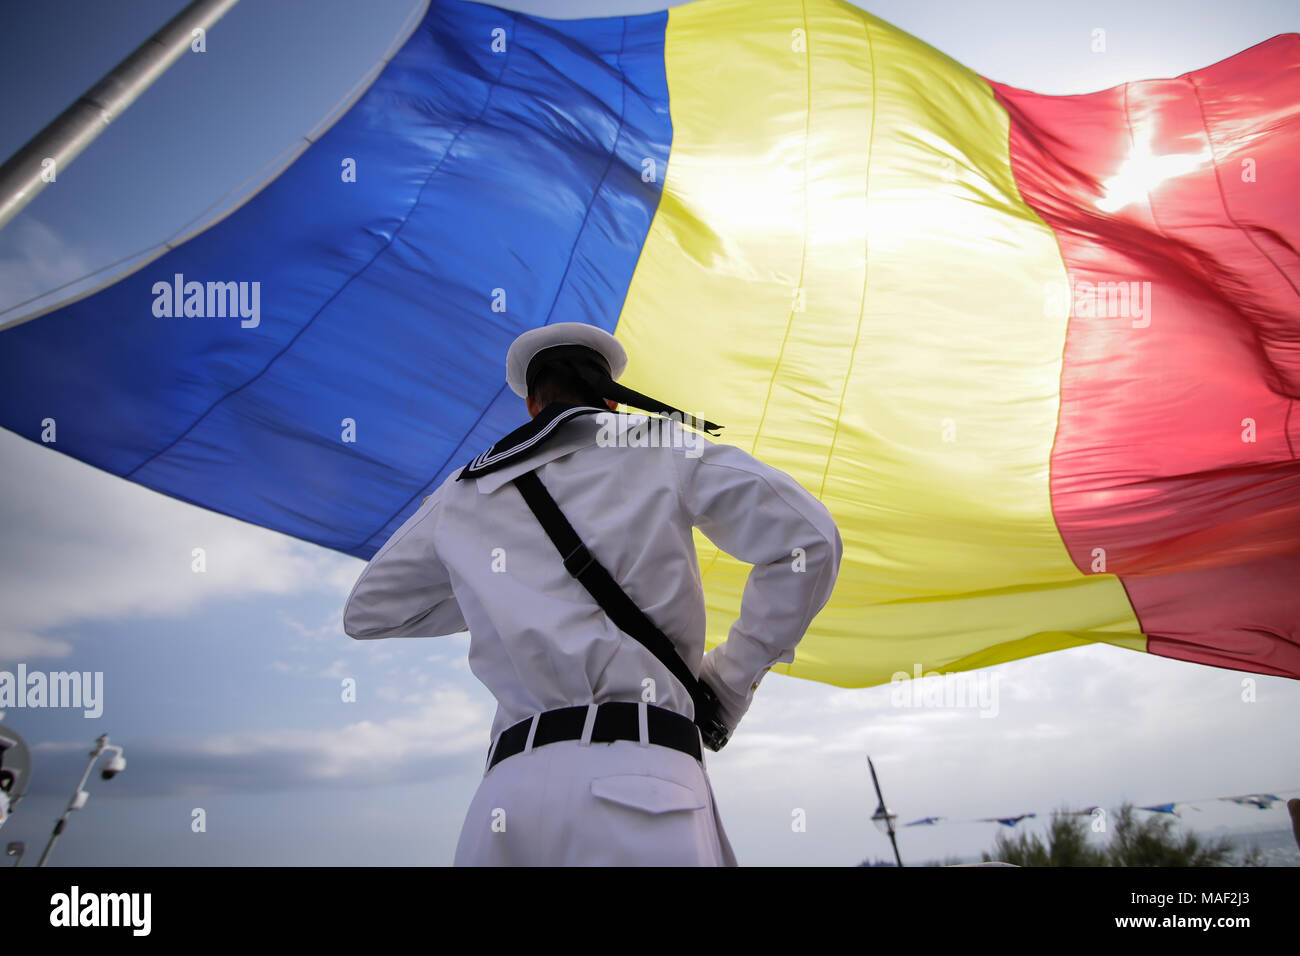 Un marin militaire roumaine prend part aux cérémonies au cours de la Journée de la marine roumaine Banque D'Images